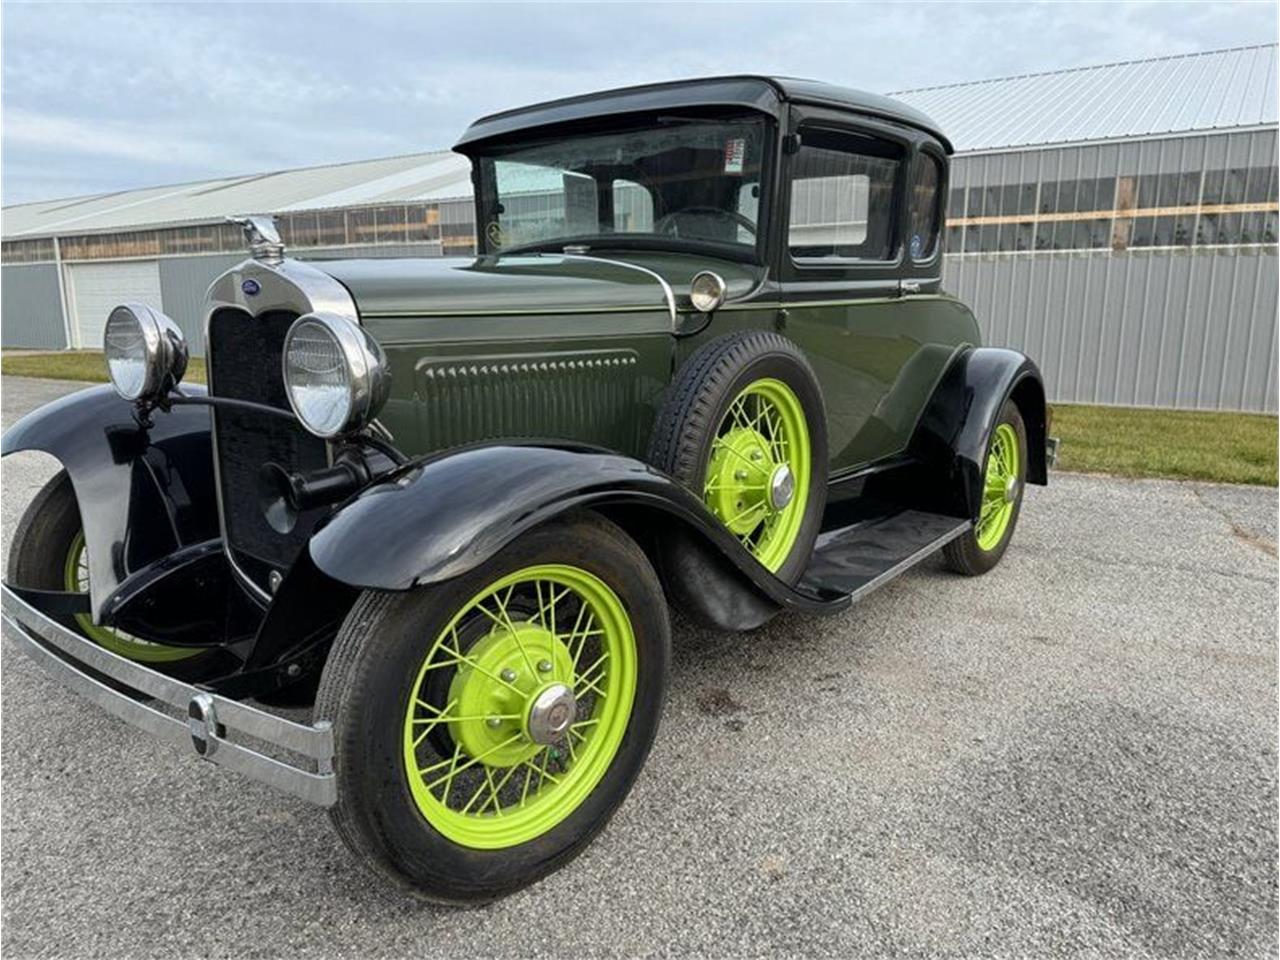 For Sale: 1931 Ford Model A in Staunton, Illinois for sale in Staunton, IL